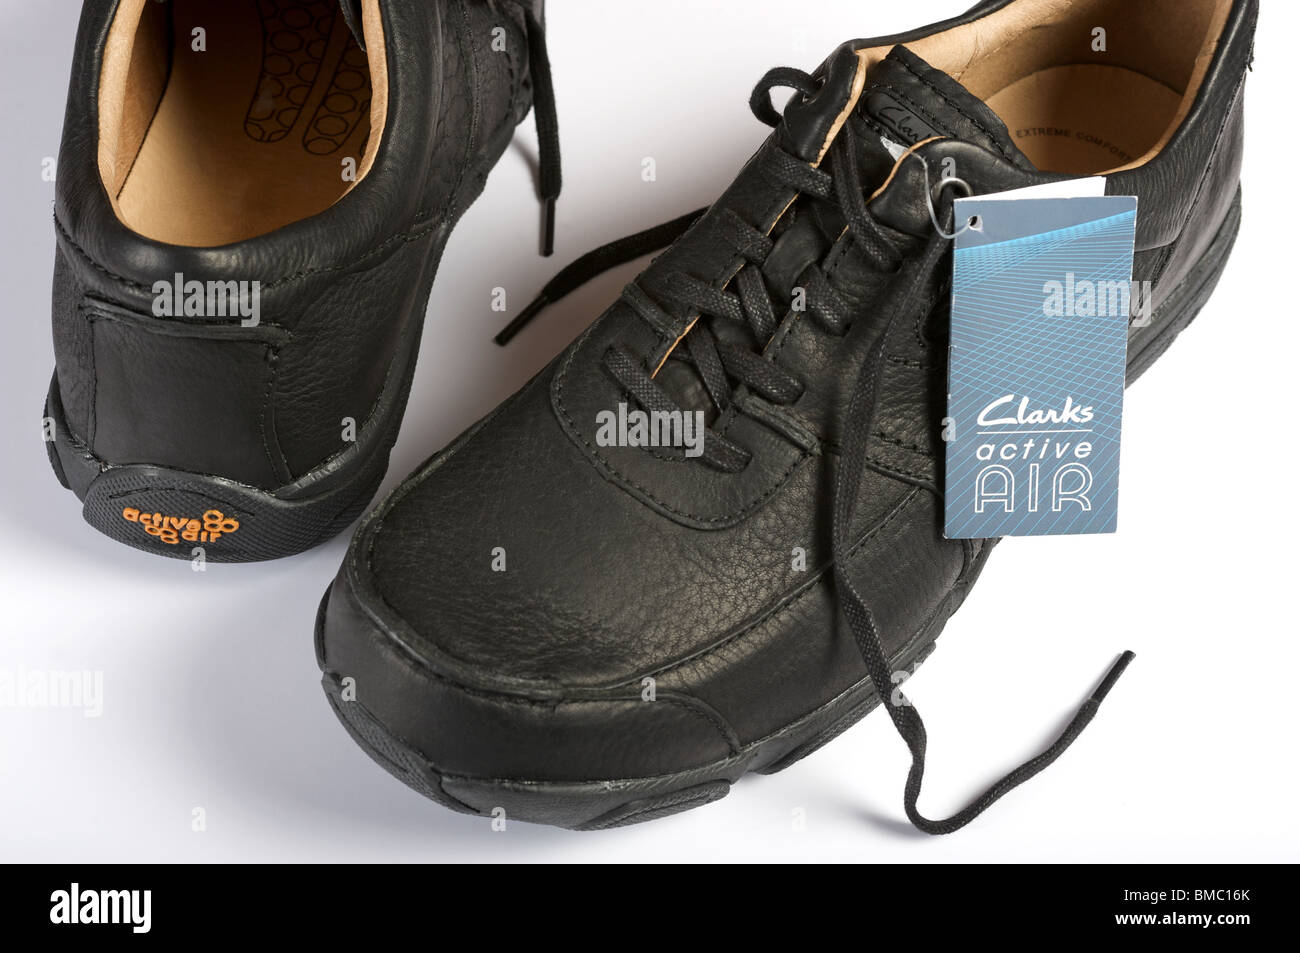 clarks active air mens shoes sale